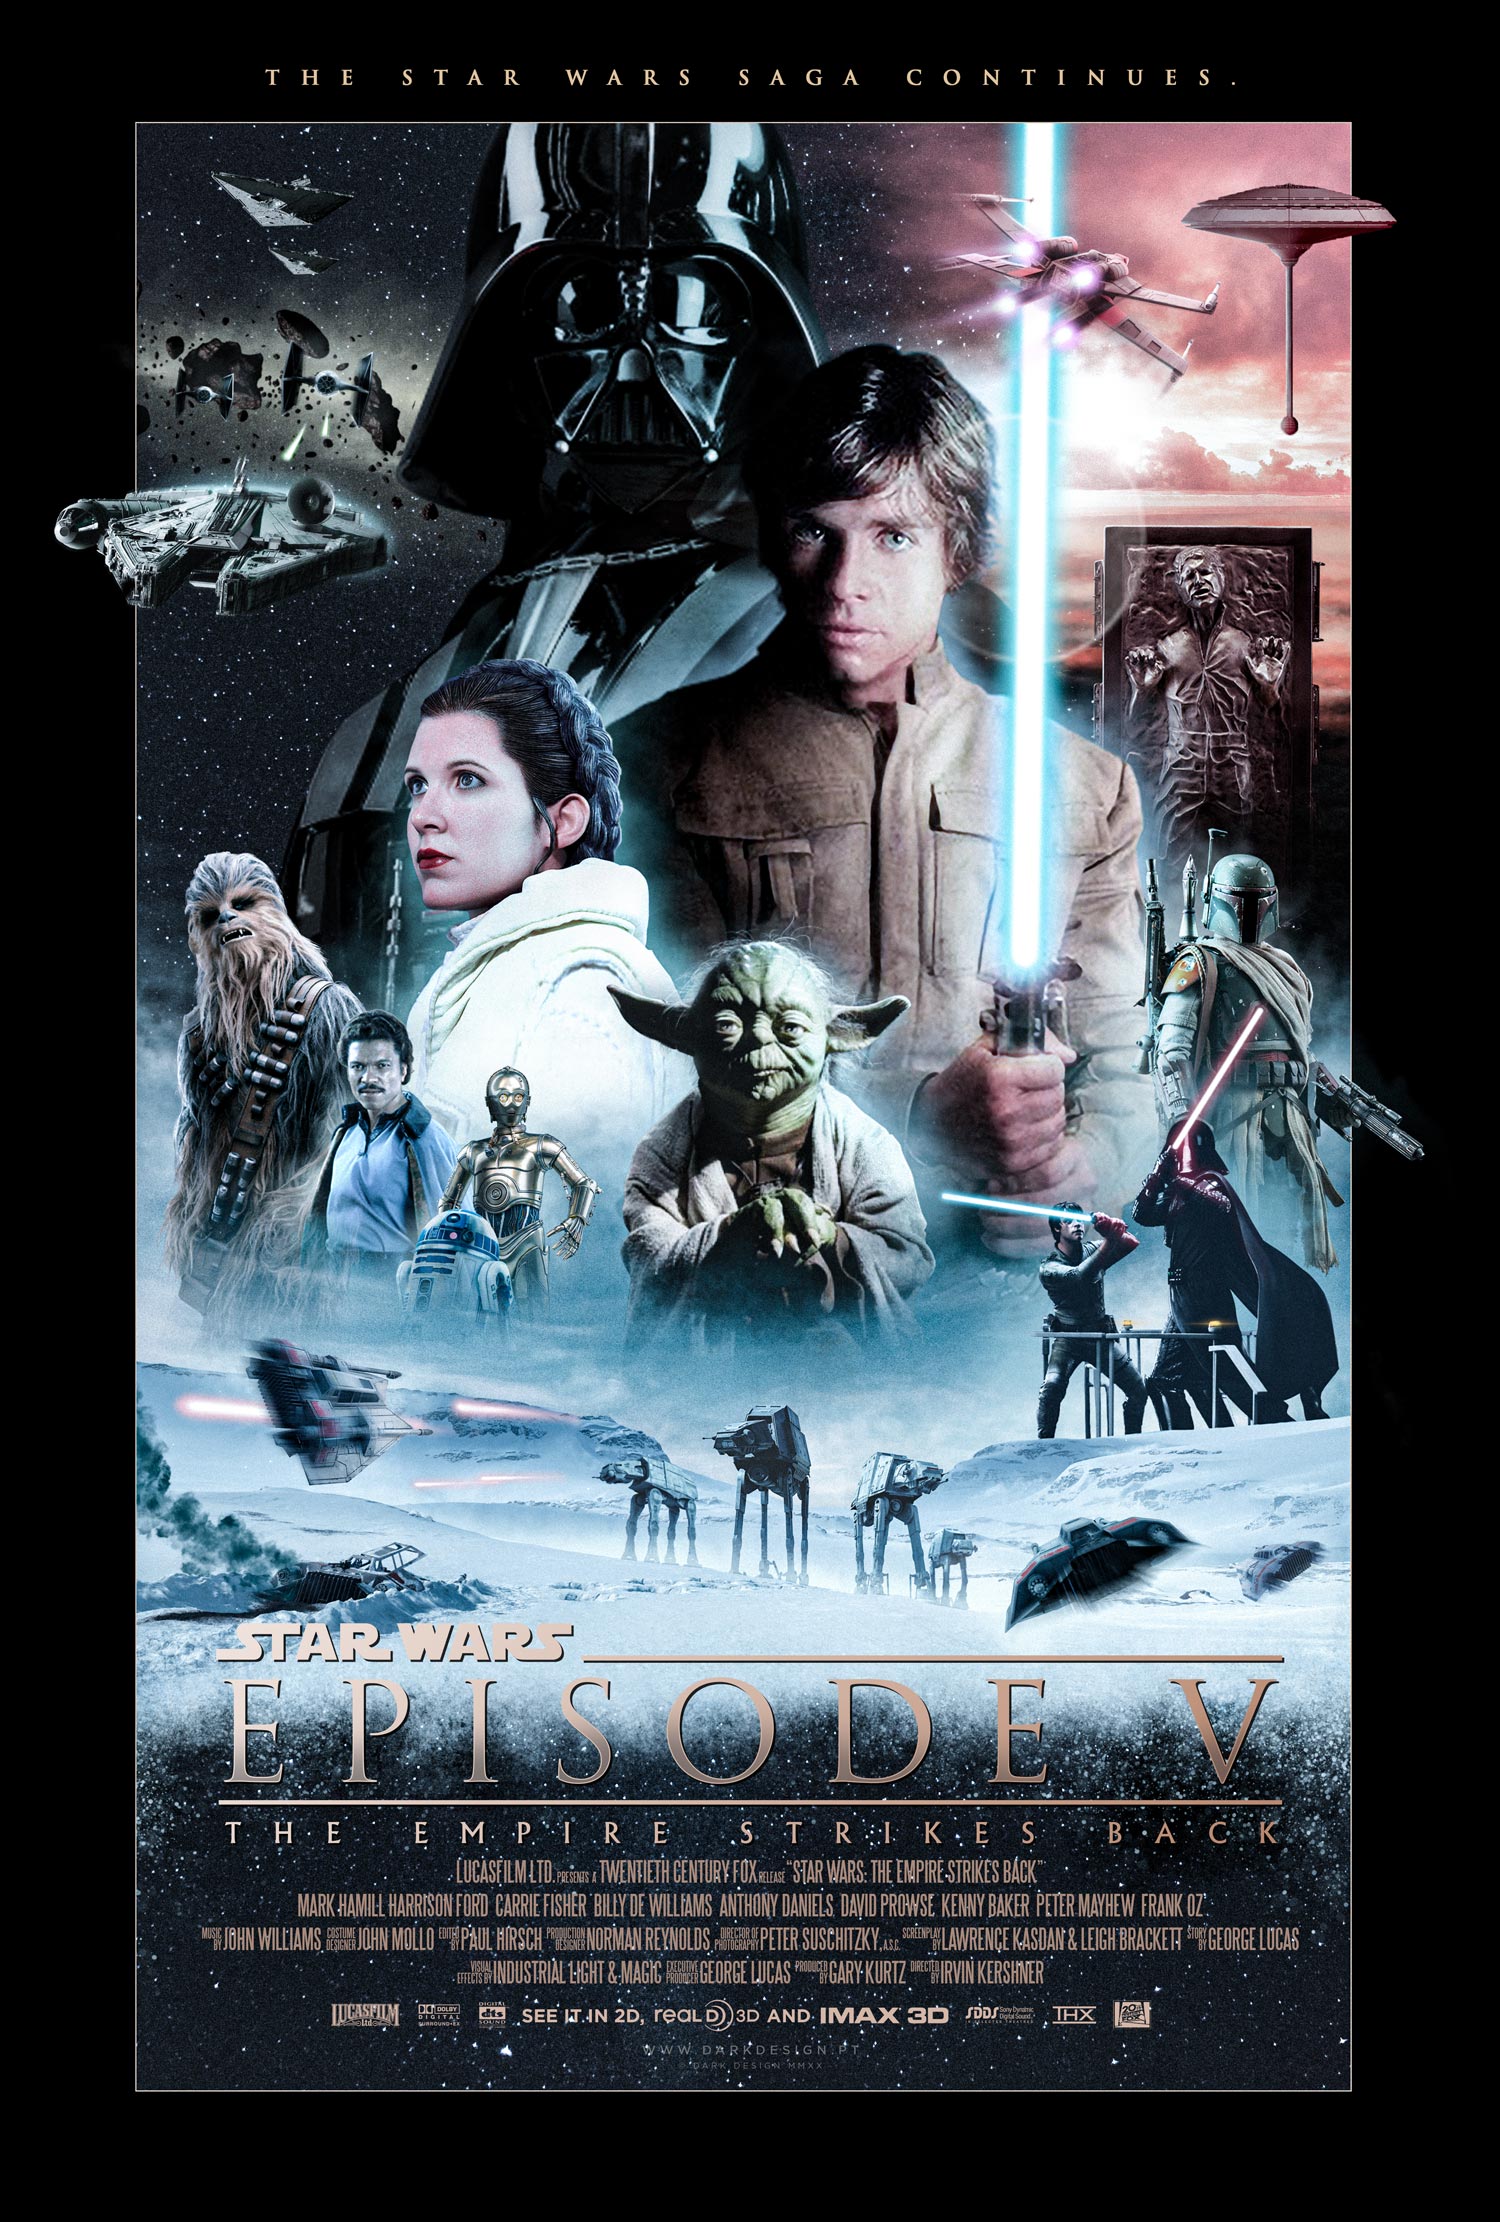 Desgracia olvidadizo Iluminar Star Wars Episode V: The Empire Strikes Back | PosterSpy